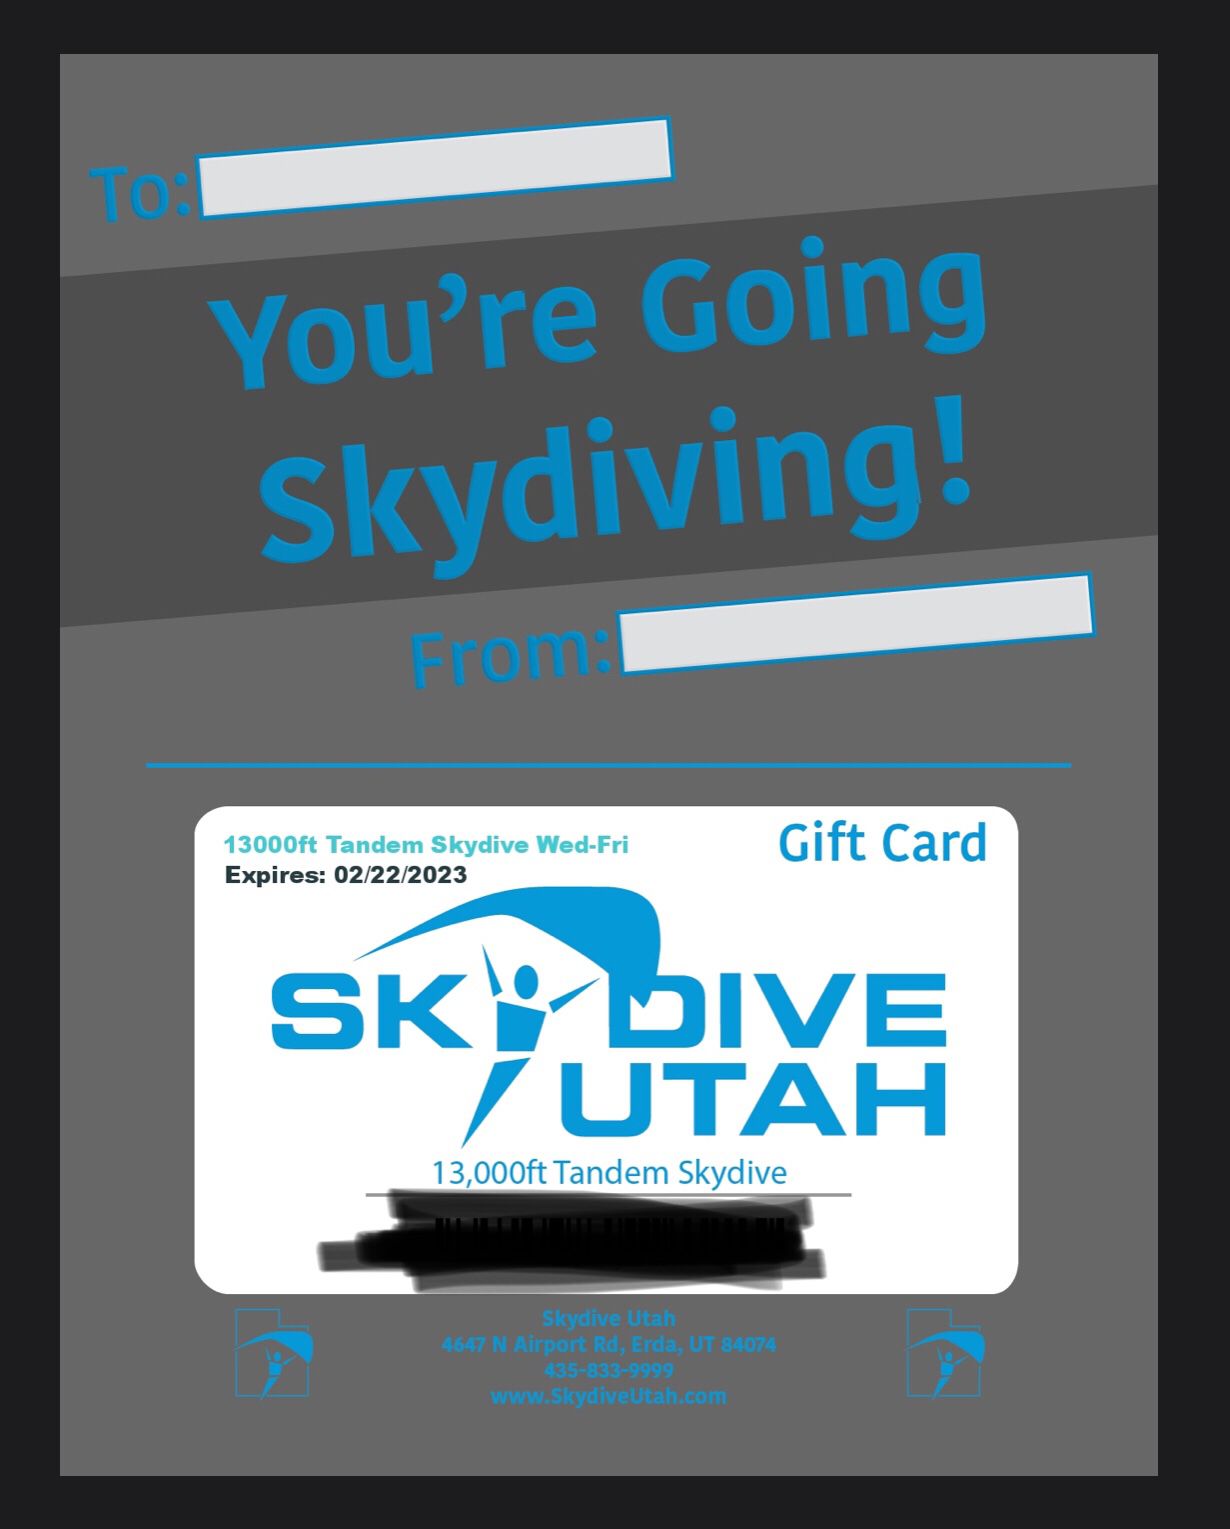 2 Skydive Utah Tickets